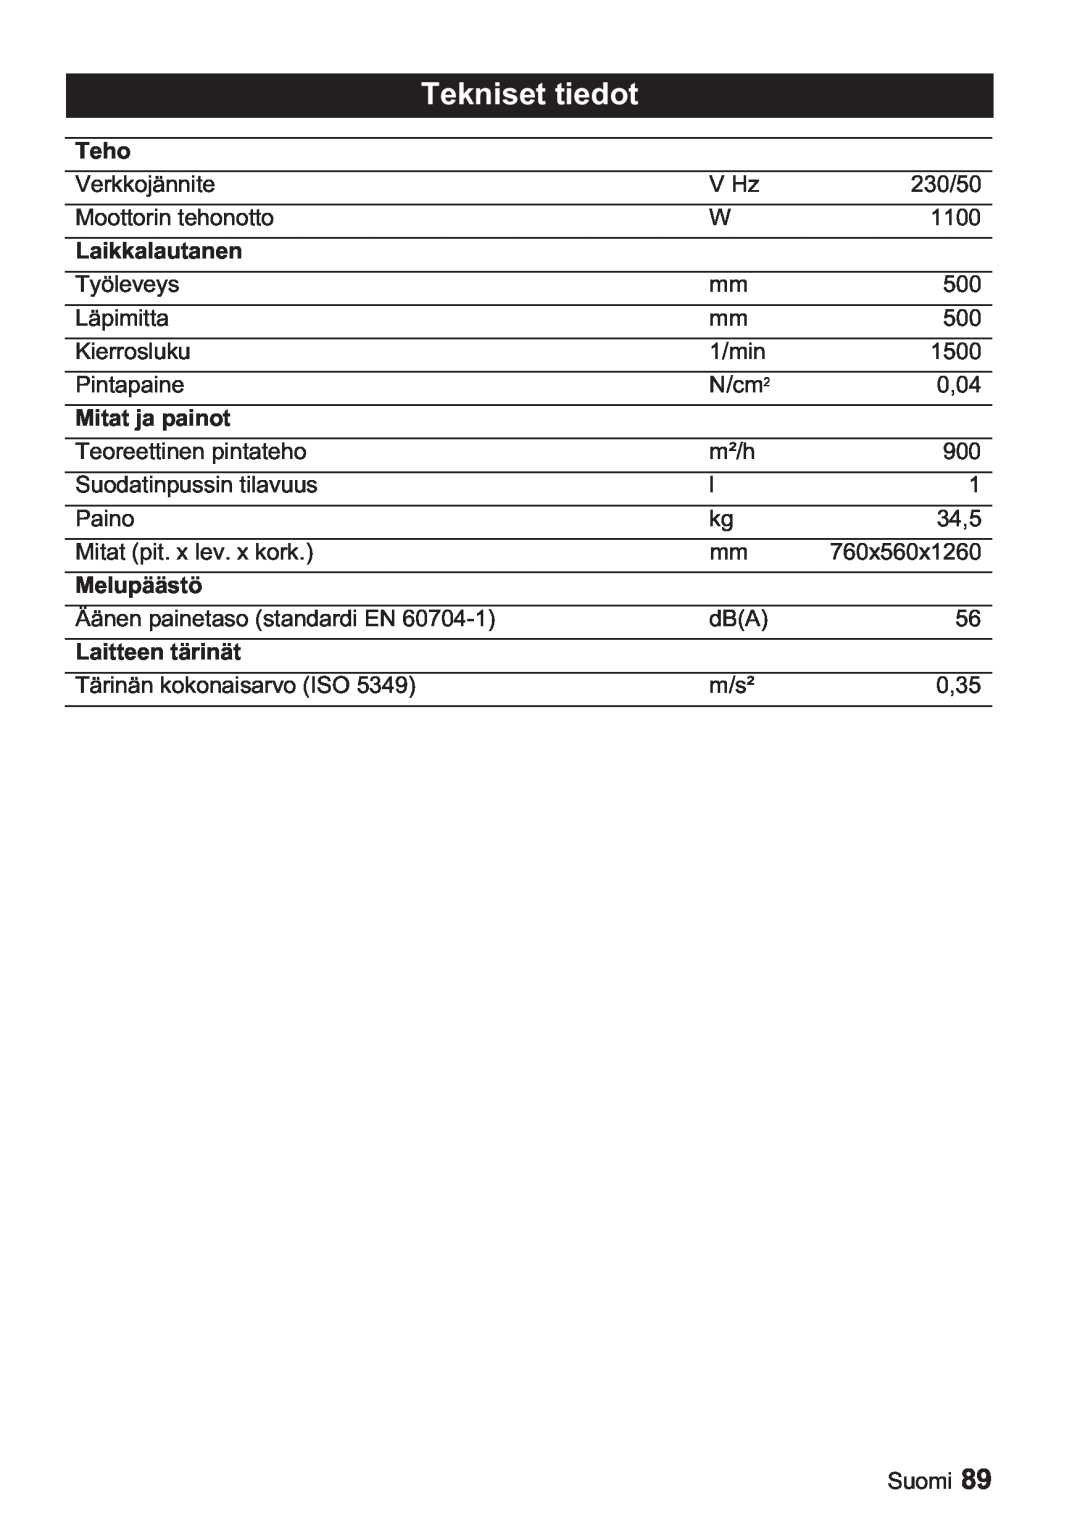 Karcher BDP 50, BDP 1500 manual Tekniset tiedot, Teho, Laikkalautanen, Mitat ja painot, Melupäästö, Laitteen tärinät 